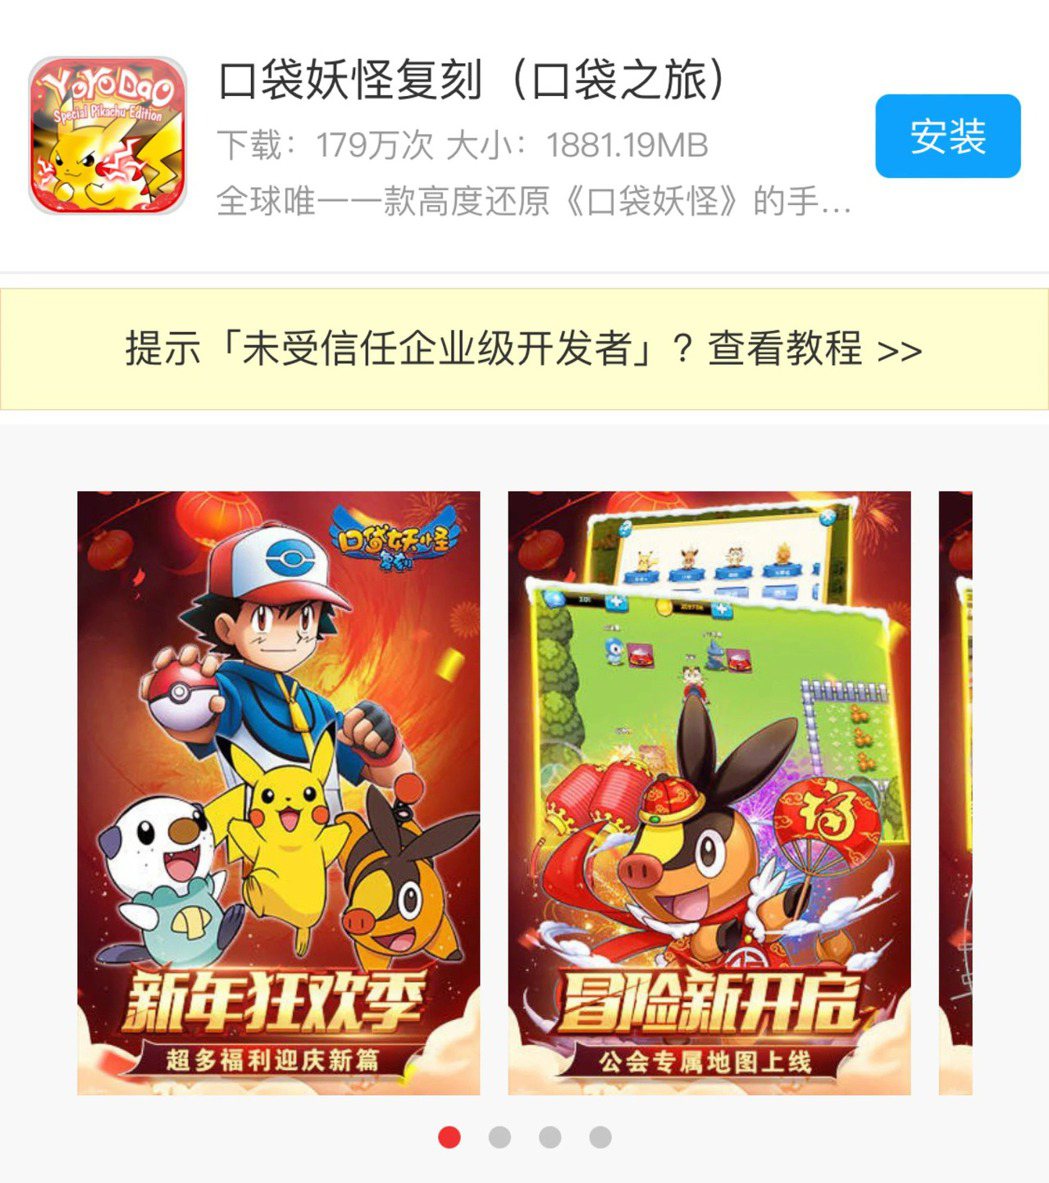 中國山寨版寶可夢遊戲頁面。圖 / 網路翻攝